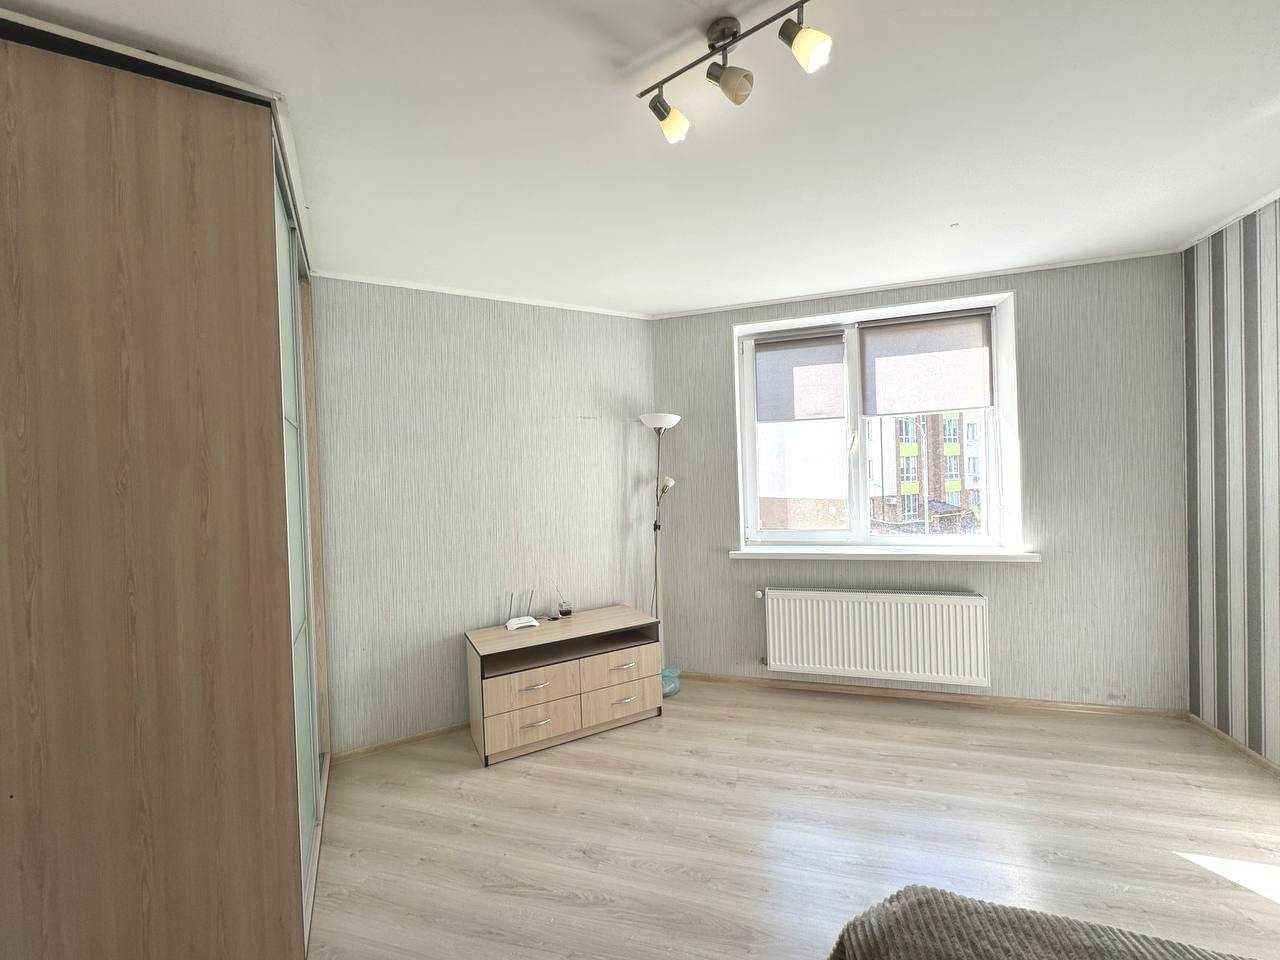 Однокімнатна, облаштована квартира 36,3 м.кв. ЖК Львівський маєток.